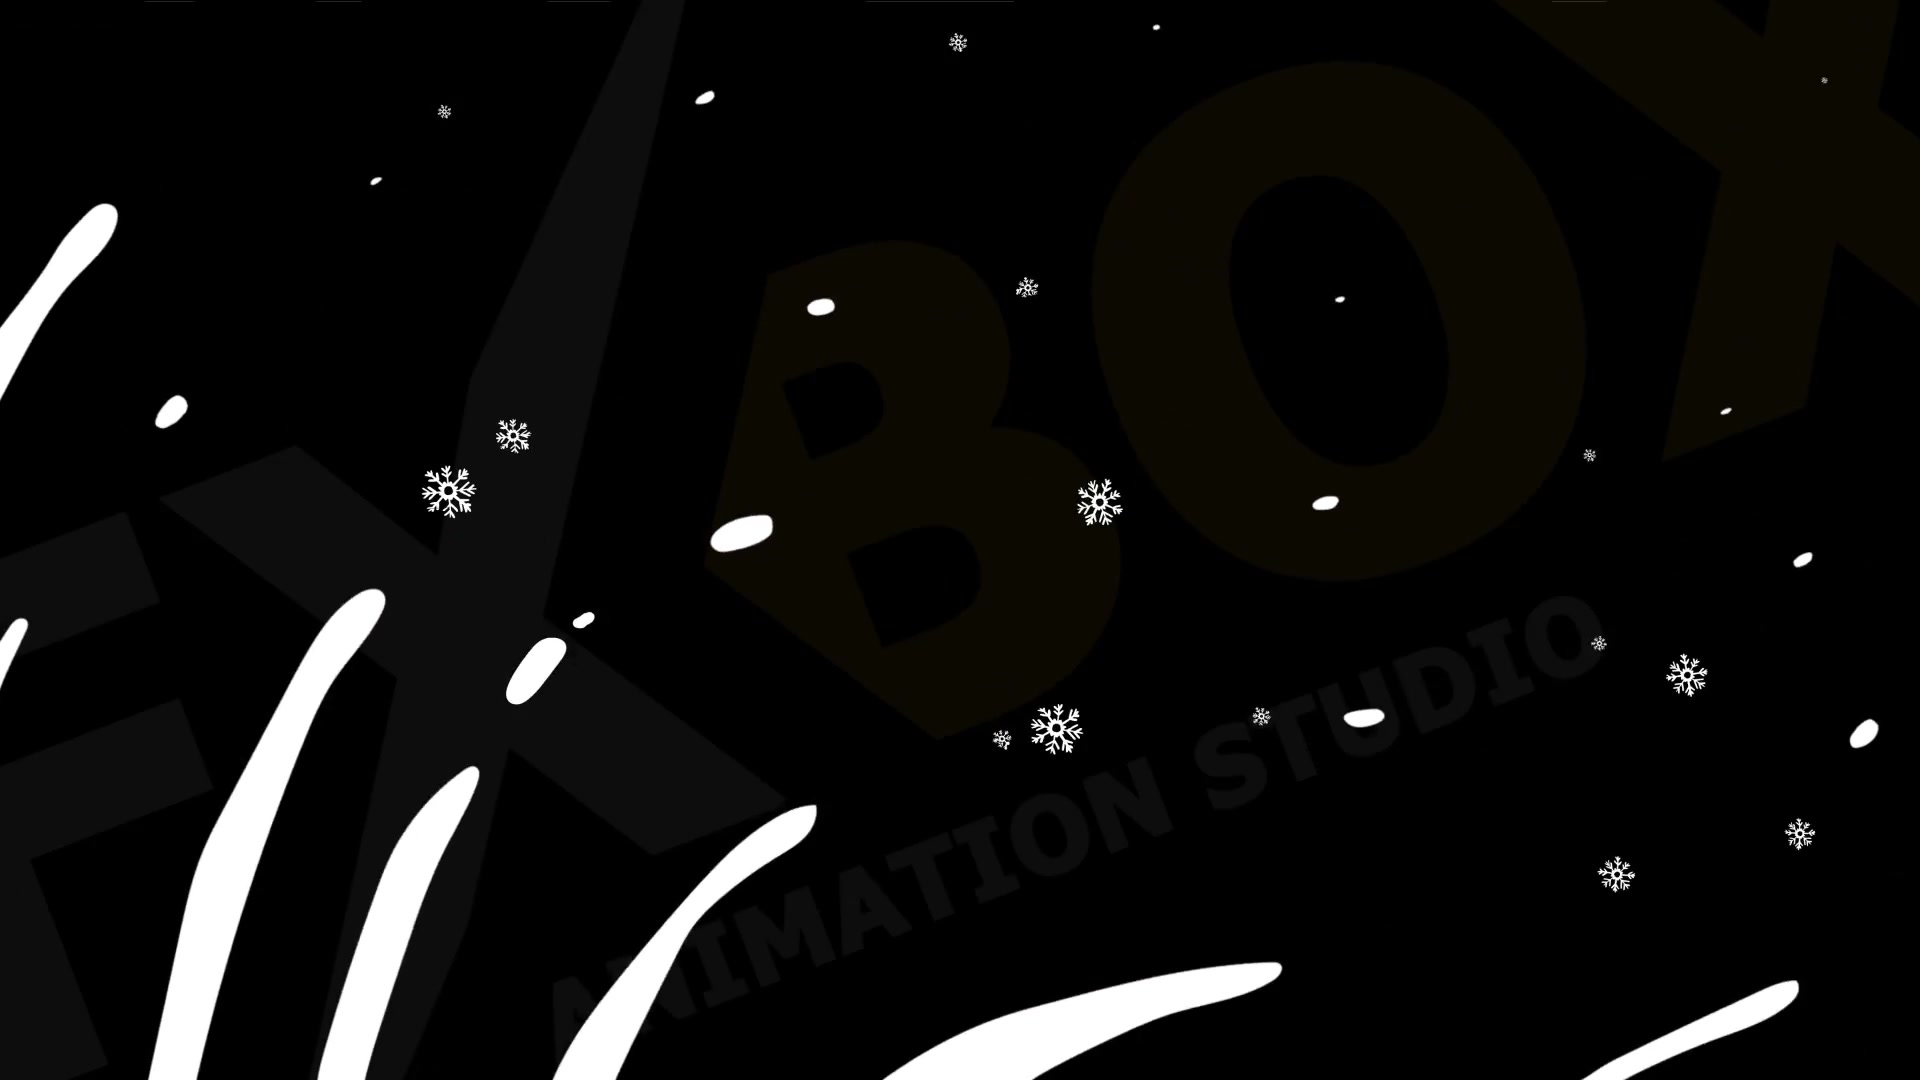 Snow Motion Elements | Premiere Pro MOGRT Videohive 29508268 Premiere Pro Image 8